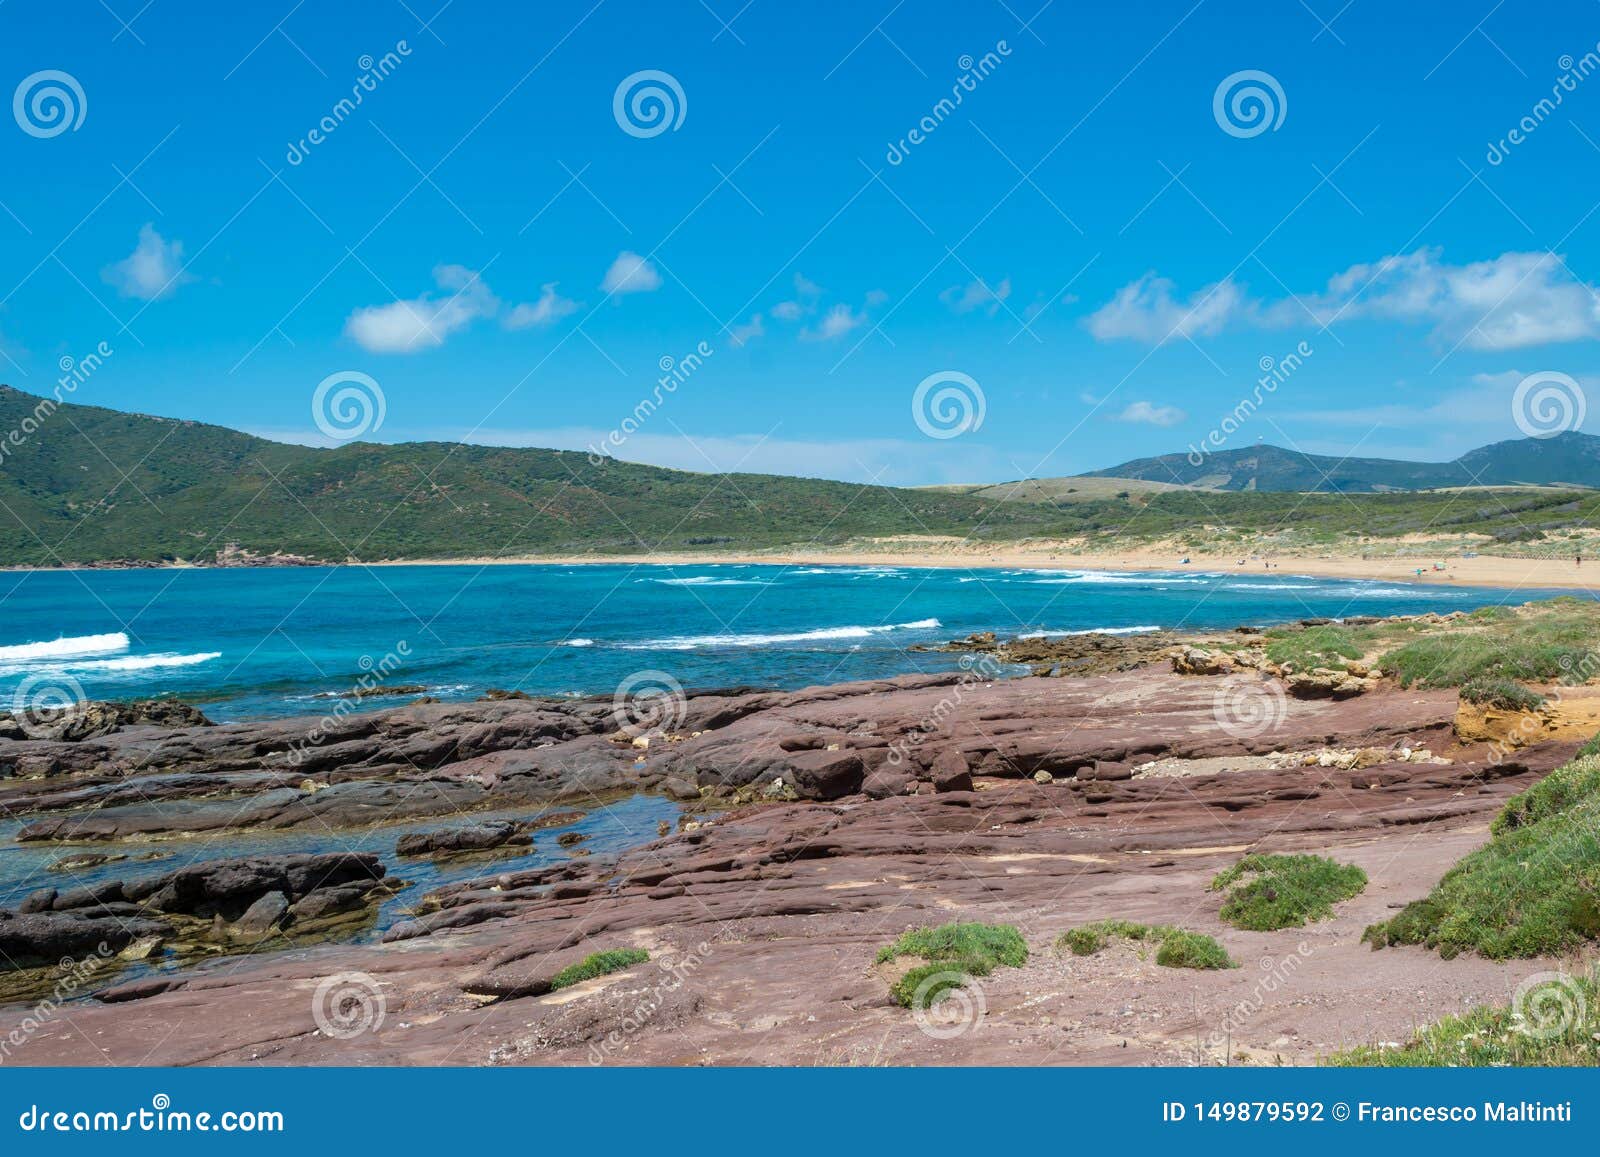 landscape of the coast near porto ferro beach